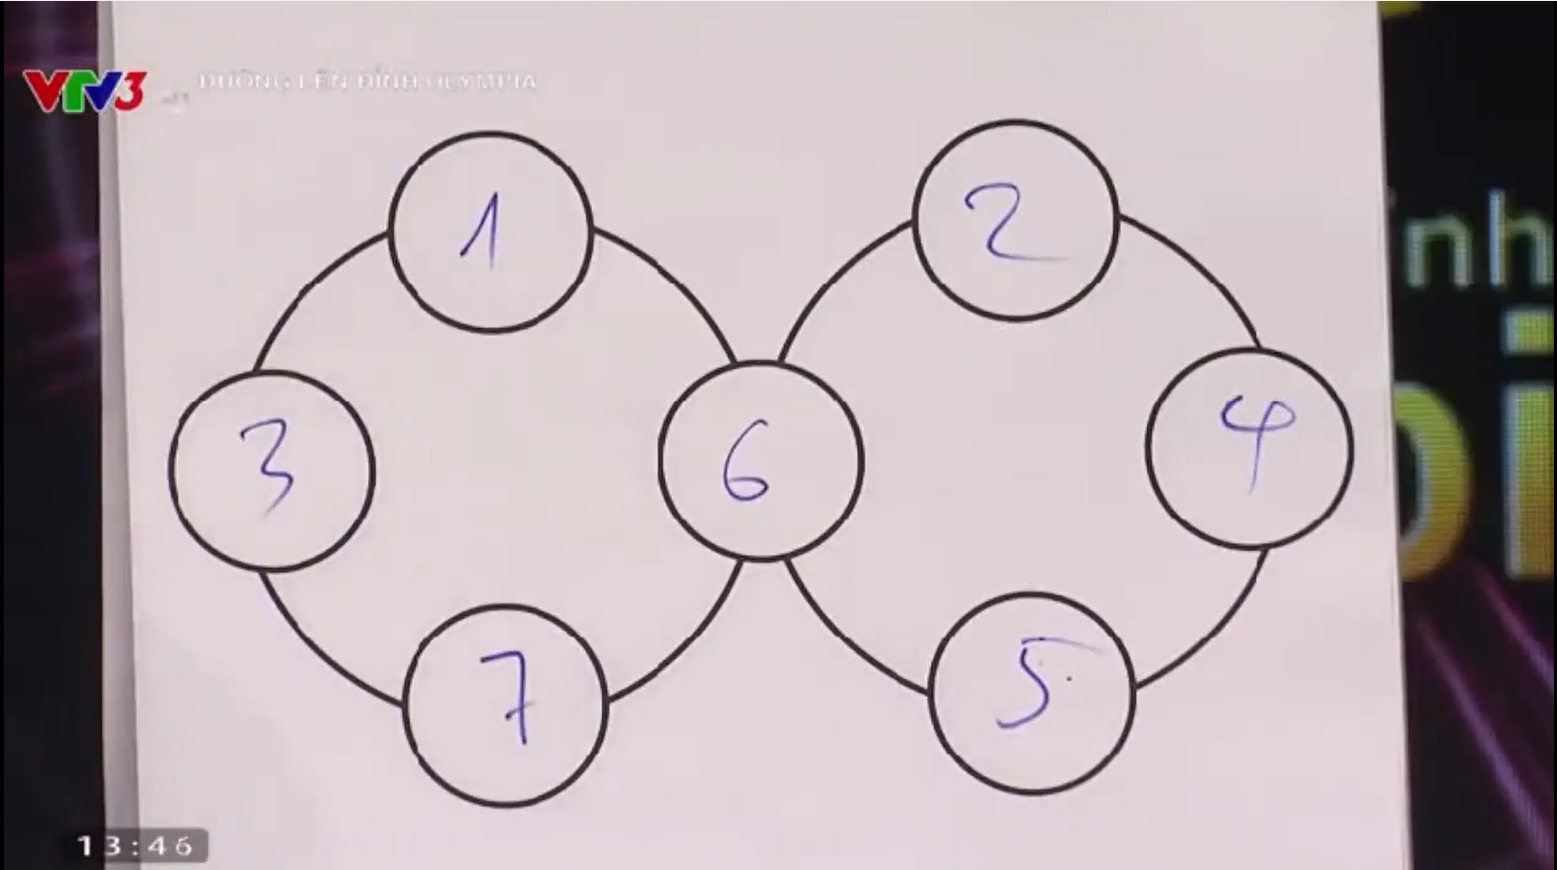 Câu hỏi Olympia siêu hack não: Điền các số từ 1 - 7 vào ô trống sao cho tổng các số trên mỗi đường tròn đều bằng 17 và không bỏ trống ô nào - Ảnh 2.